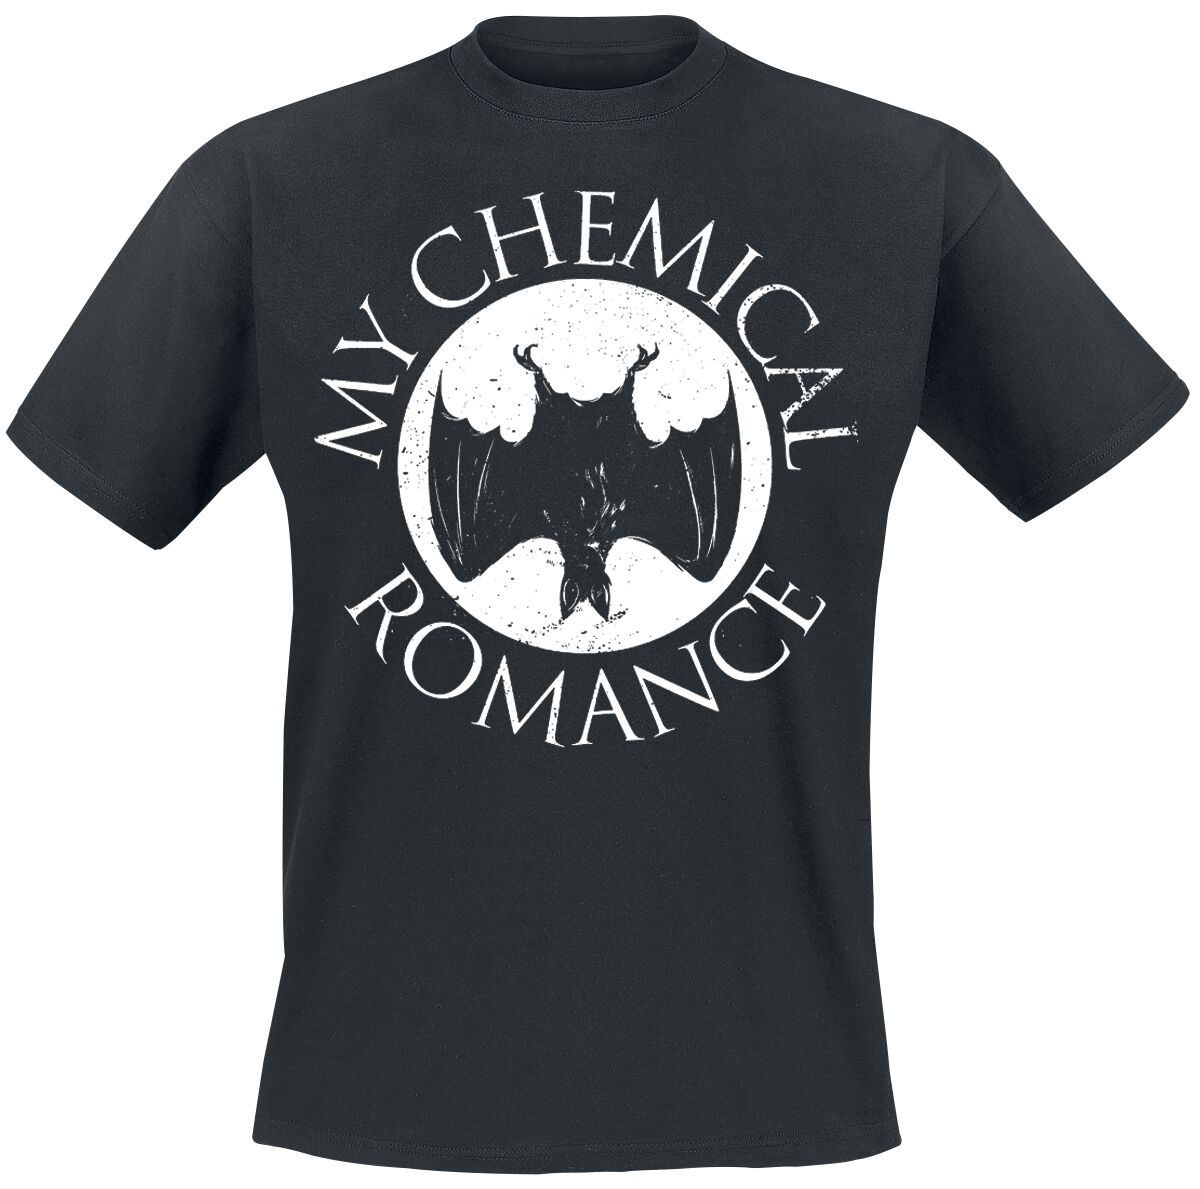 My Chemical Romance T-Shirt - Bat - S bis XXL - für Männer - Größe XL - schwarz  - EMP exklusives Merchandise!